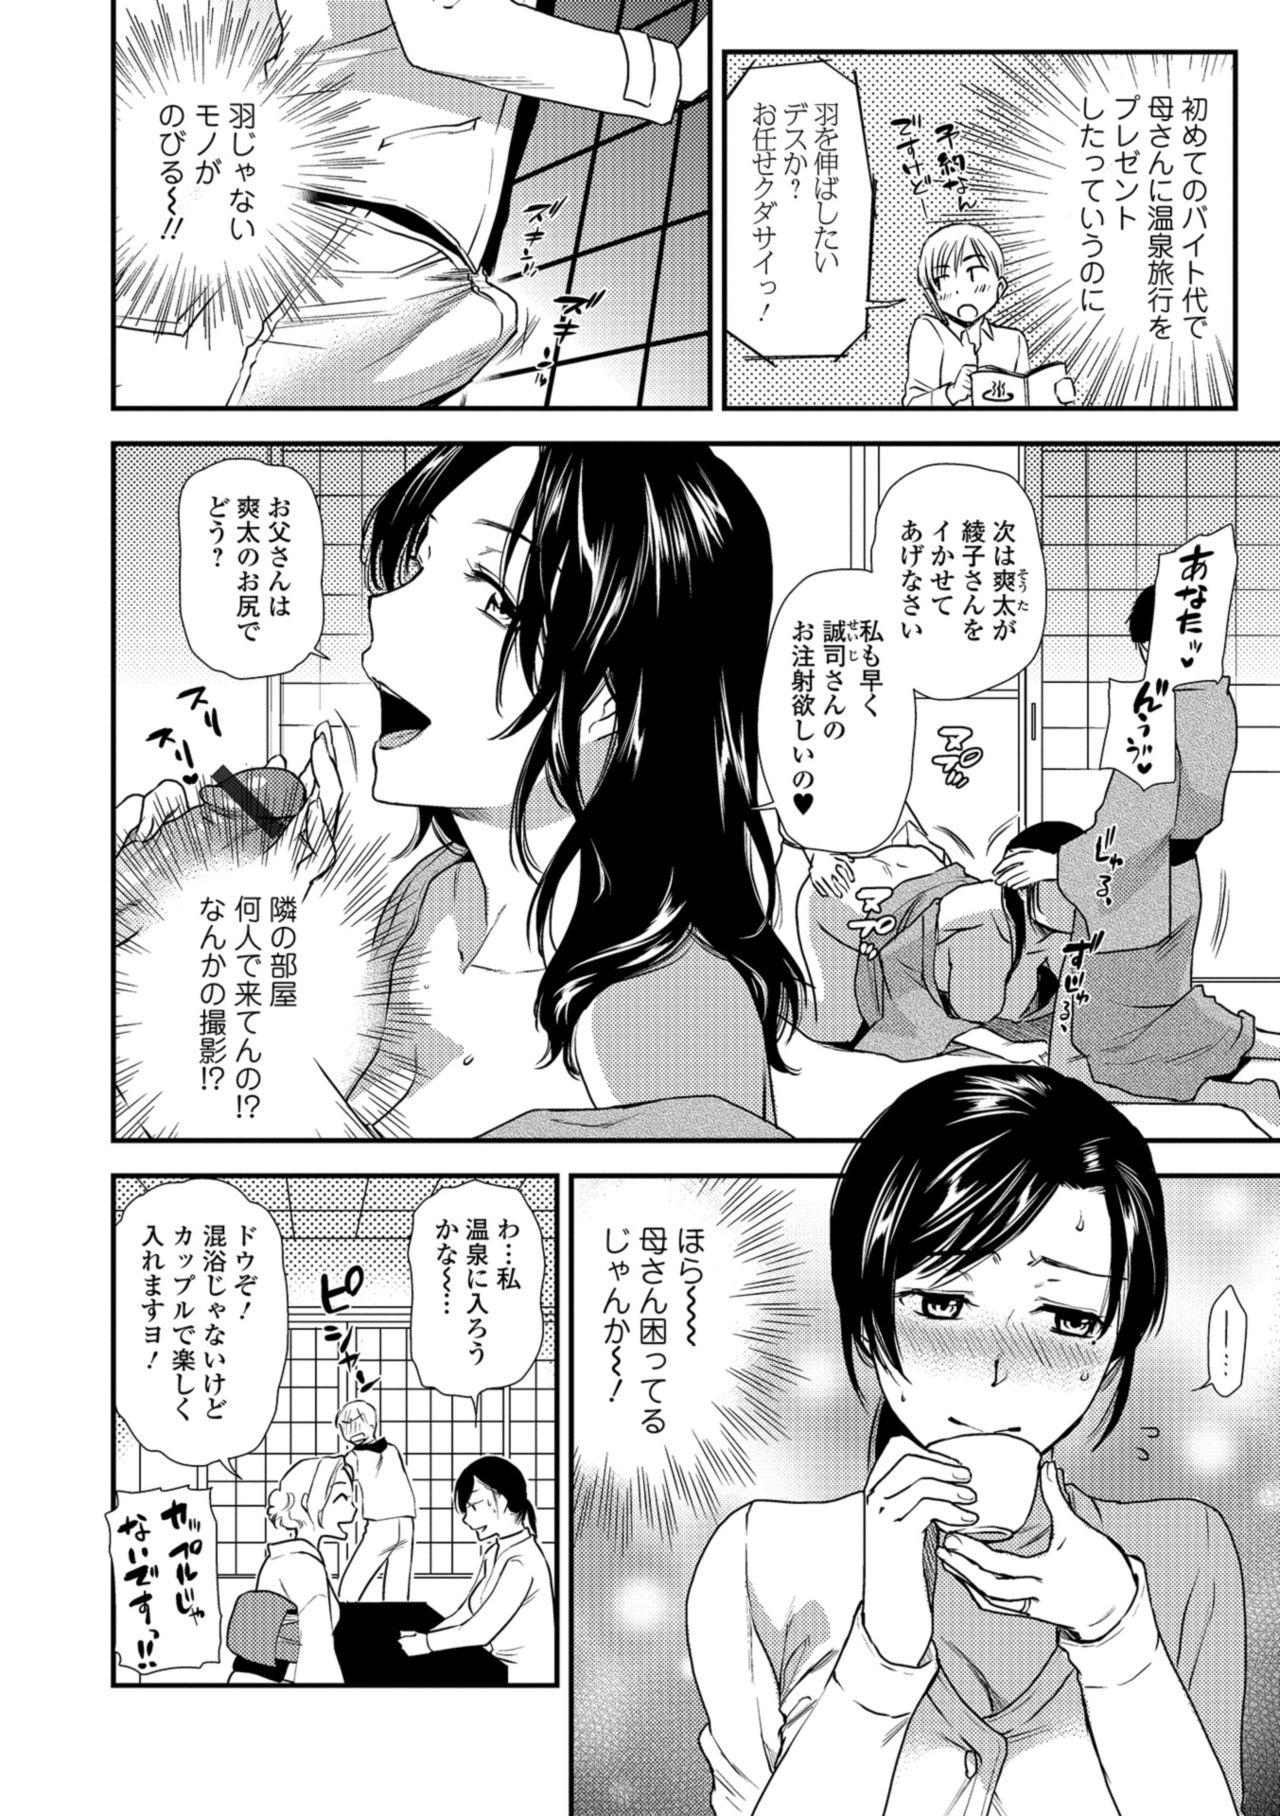 Glam Web Comic Toutetsu Vol. 34 Ladyboy - Page 4